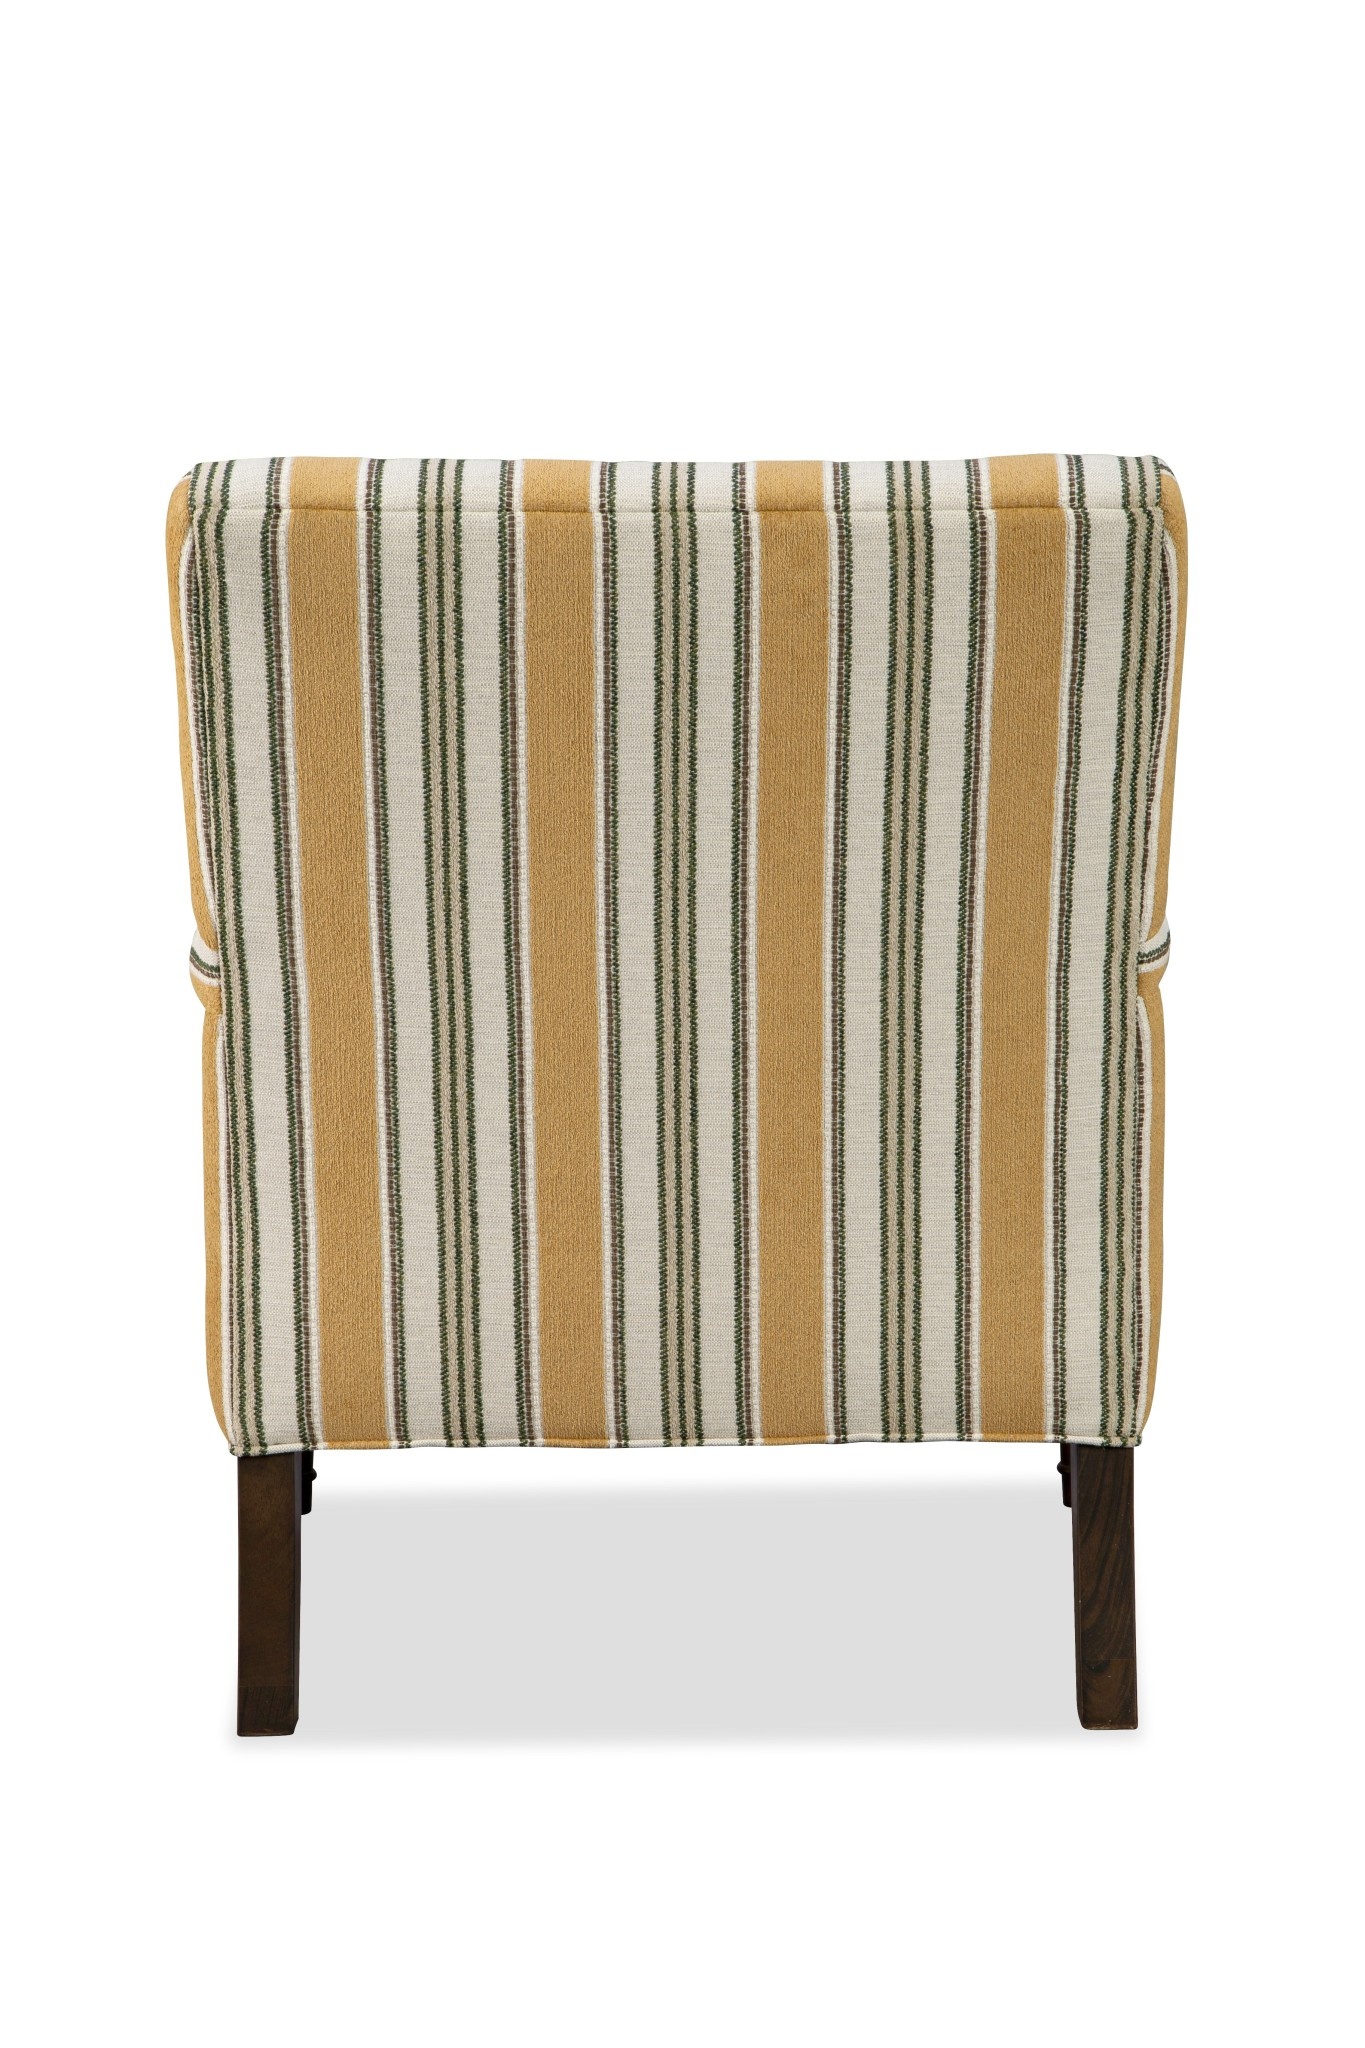 Craftmaster Furniture P033910BD Paula Deen Chair